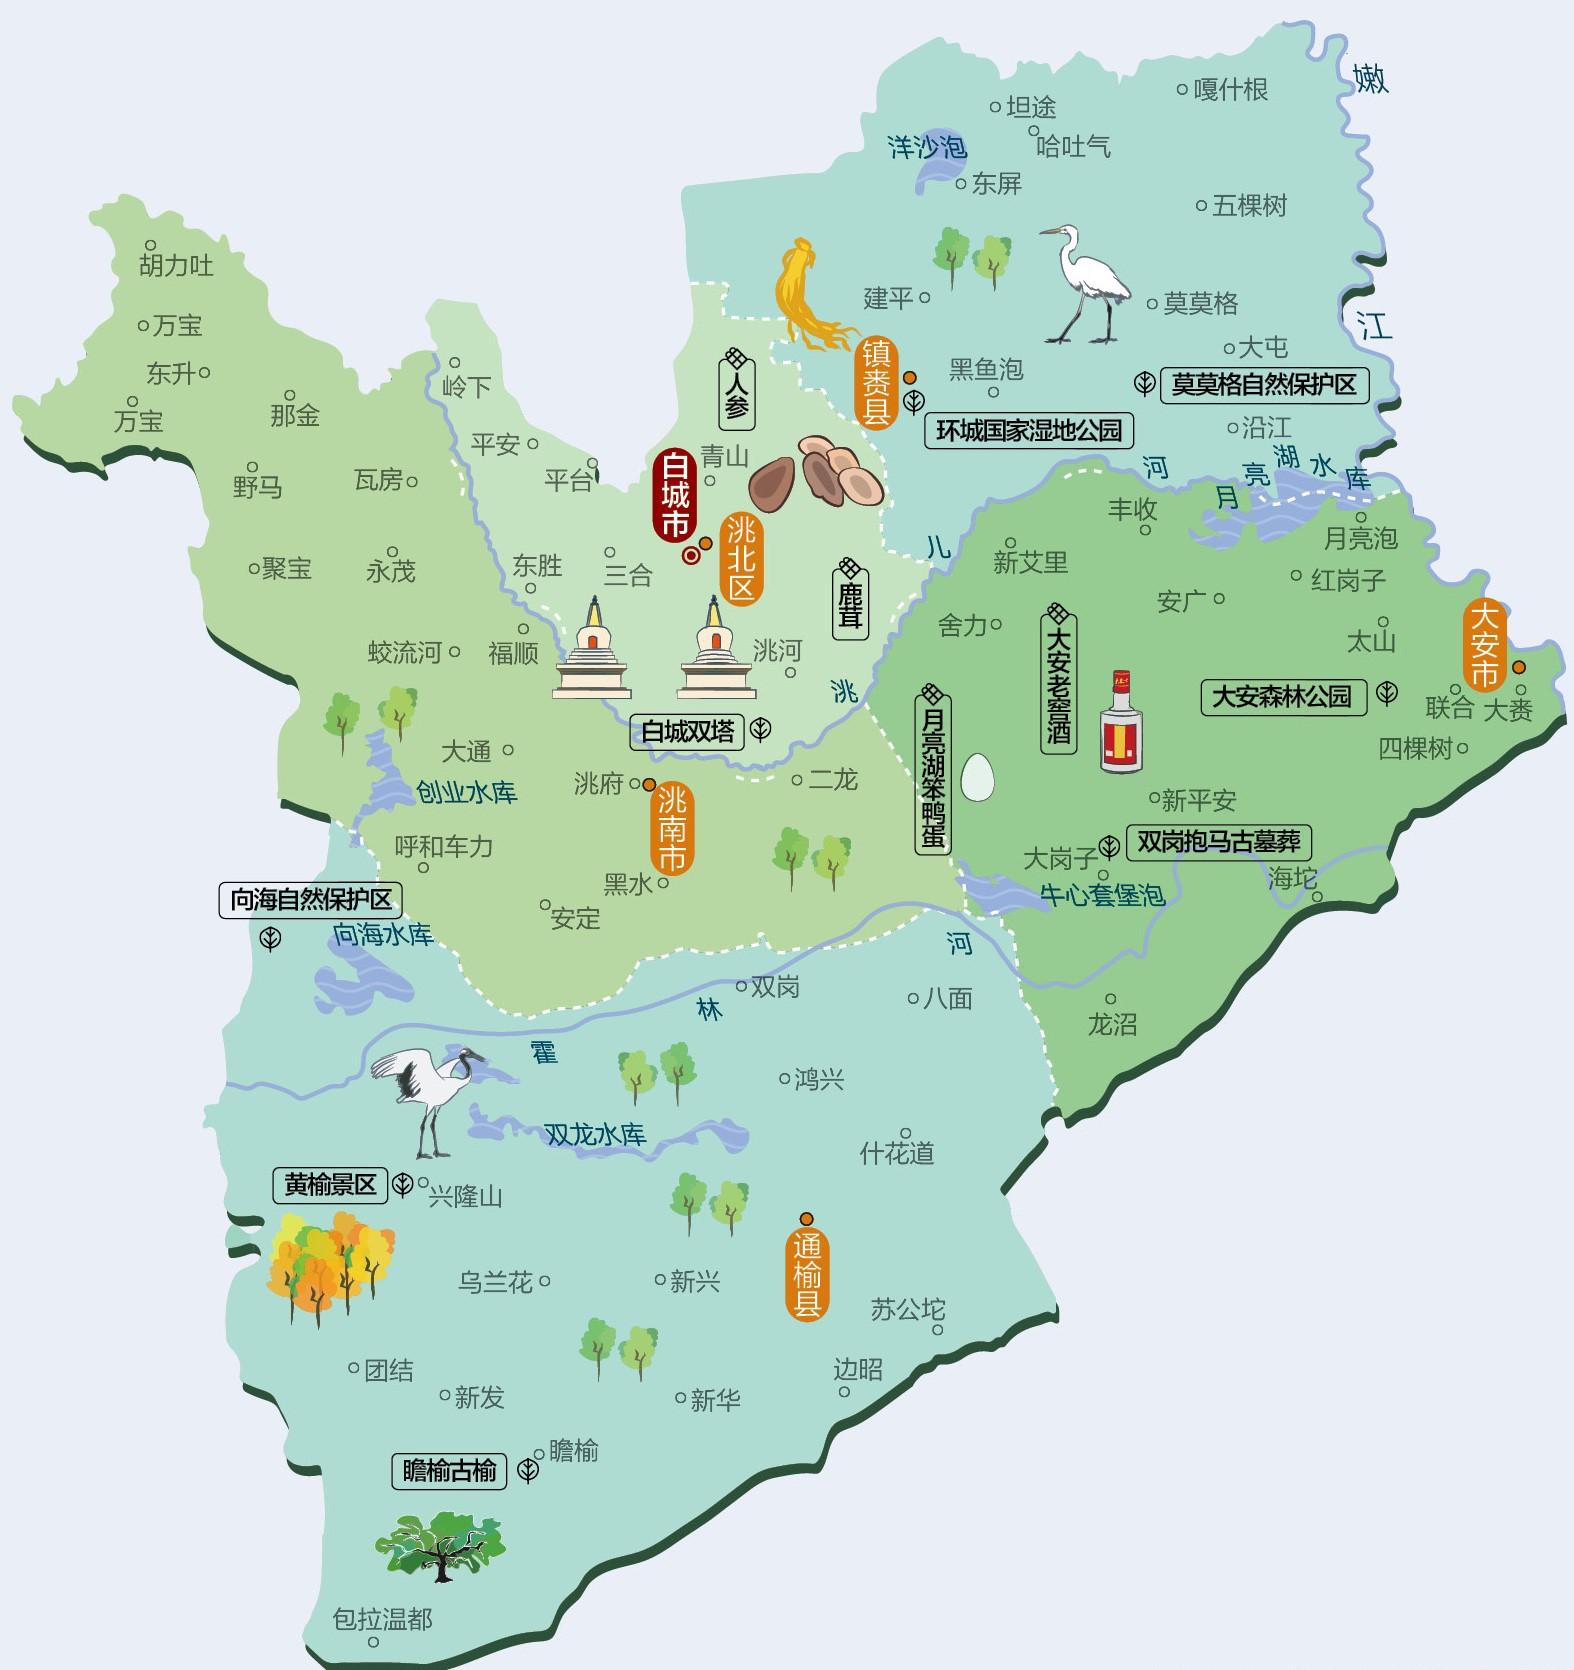 吉林省行政区域简图 - 吉林省地图 - 地理教师网